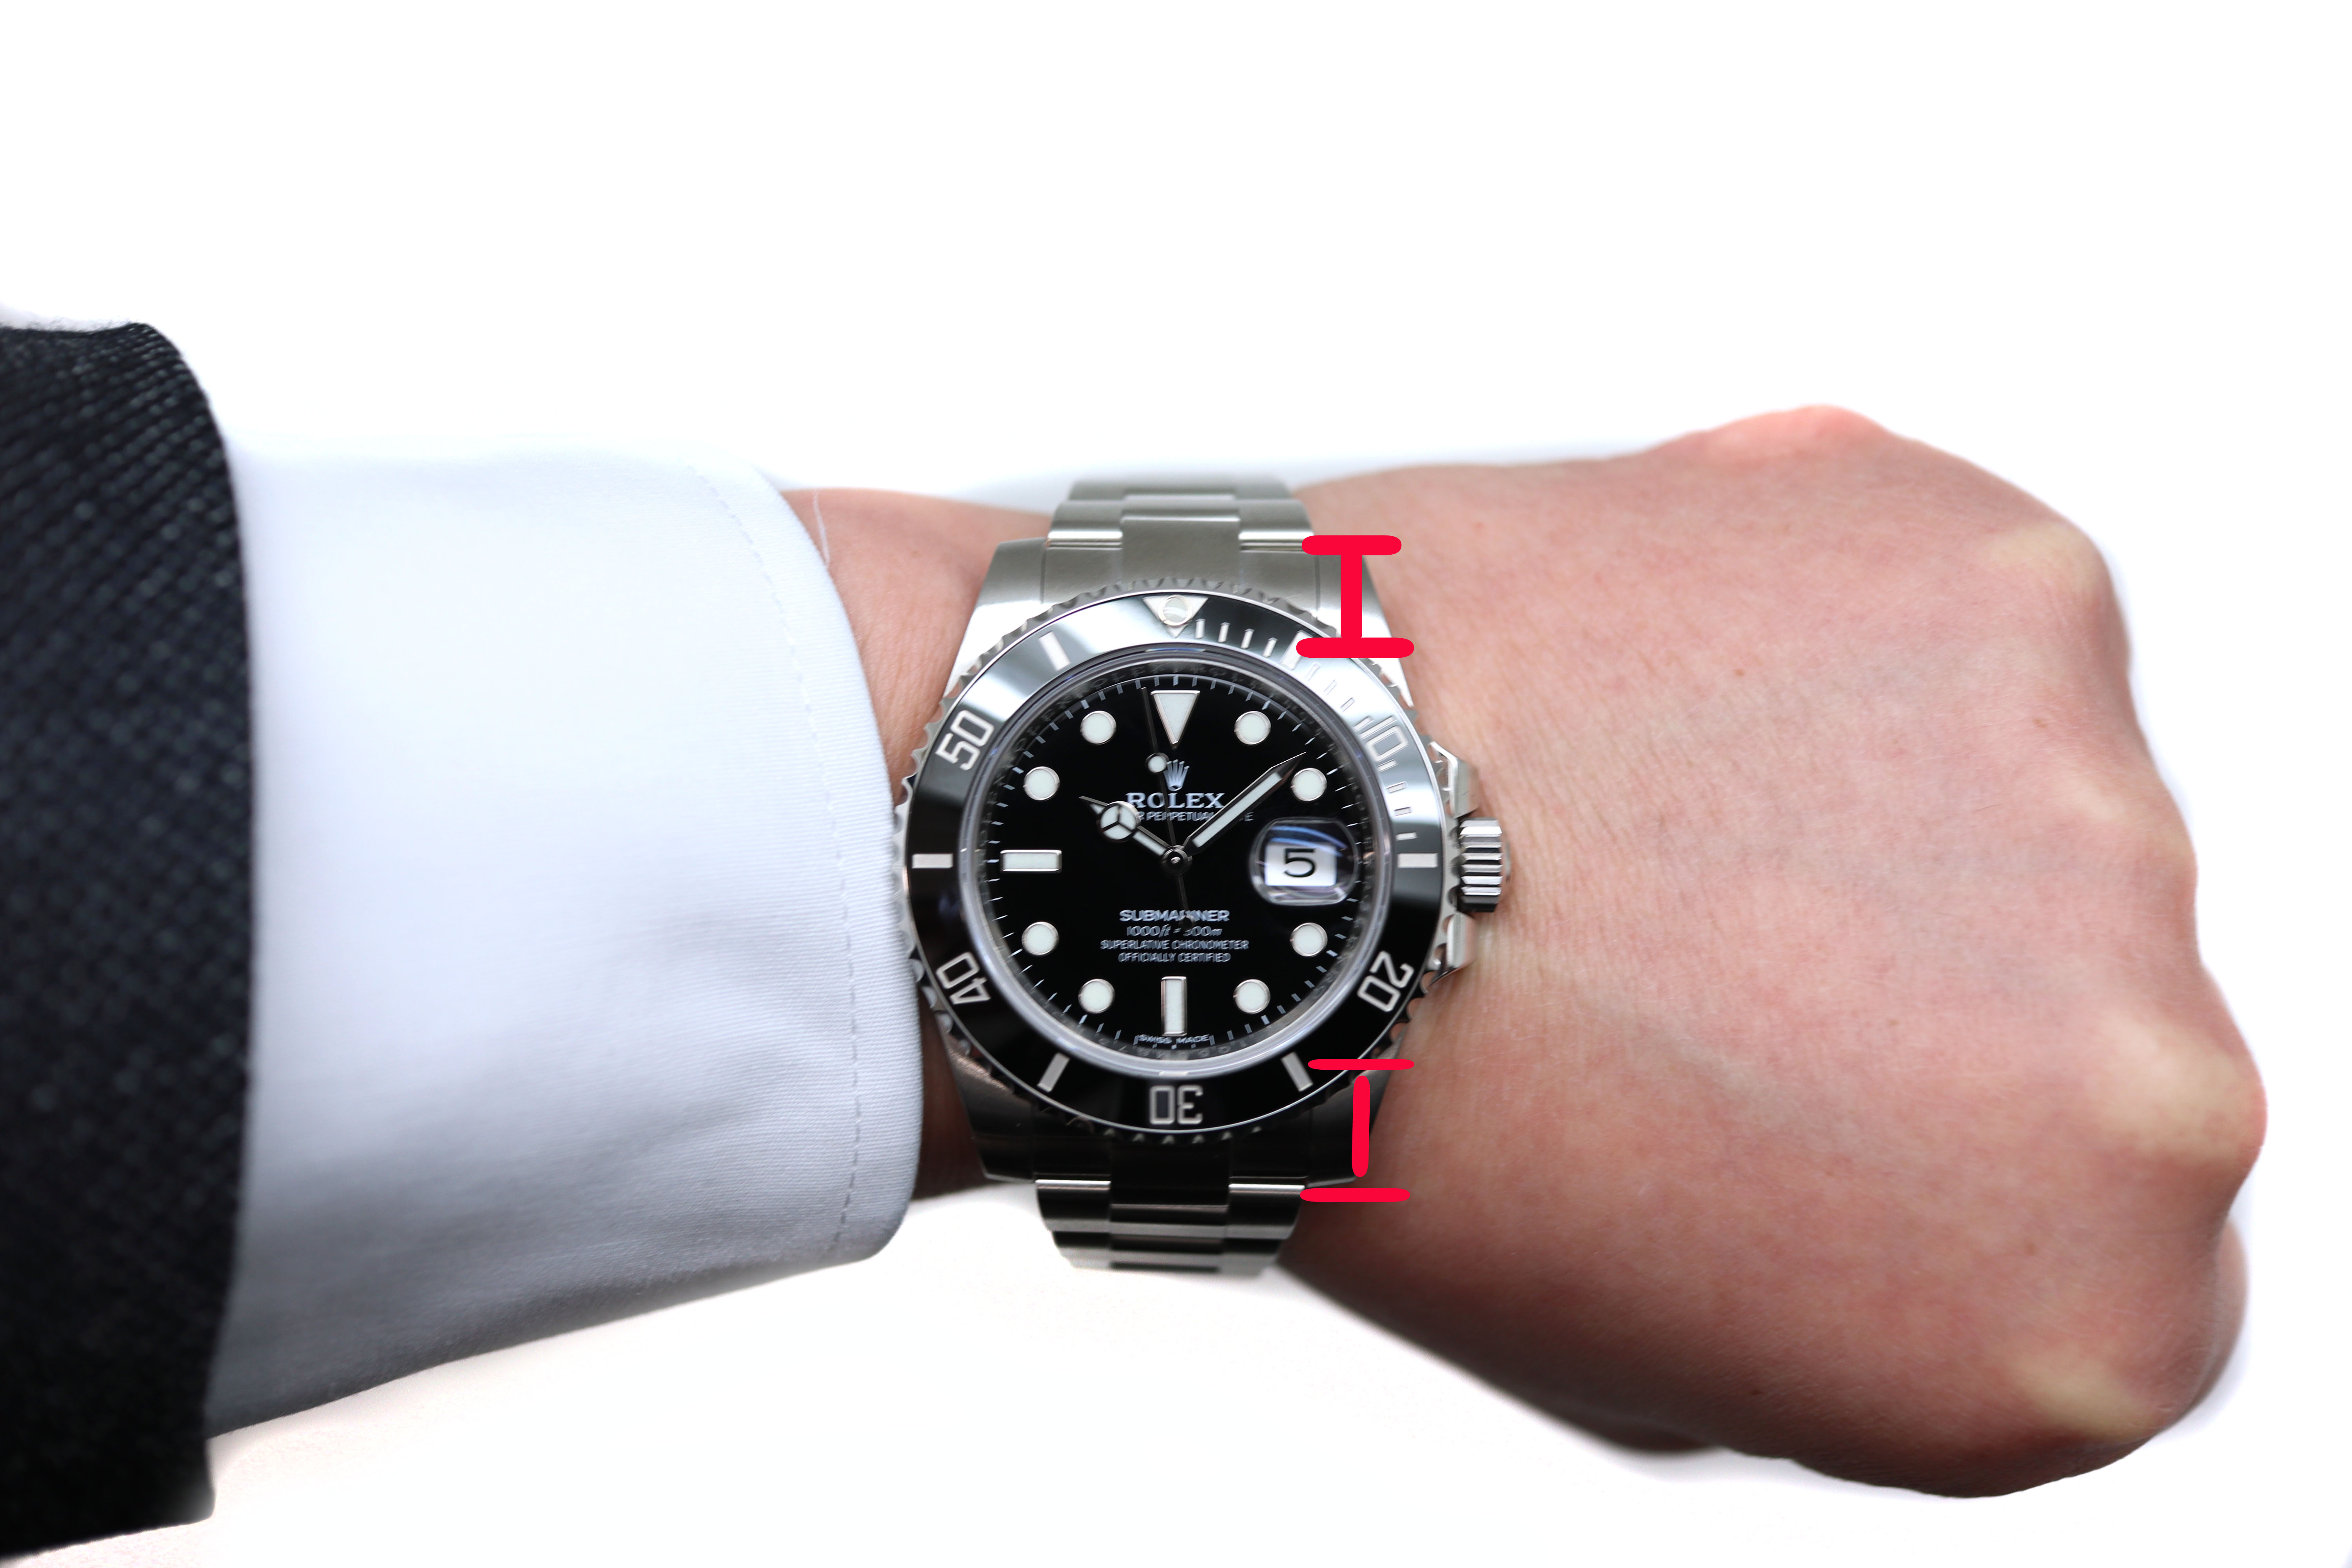 自分に合った時計のサイズの選び方とは ケースサイズから見る体格に合わせた腕時計 茜部 公式 岐阜 愛知の質 ブランド品の買取 販売なら質屋かんてい局